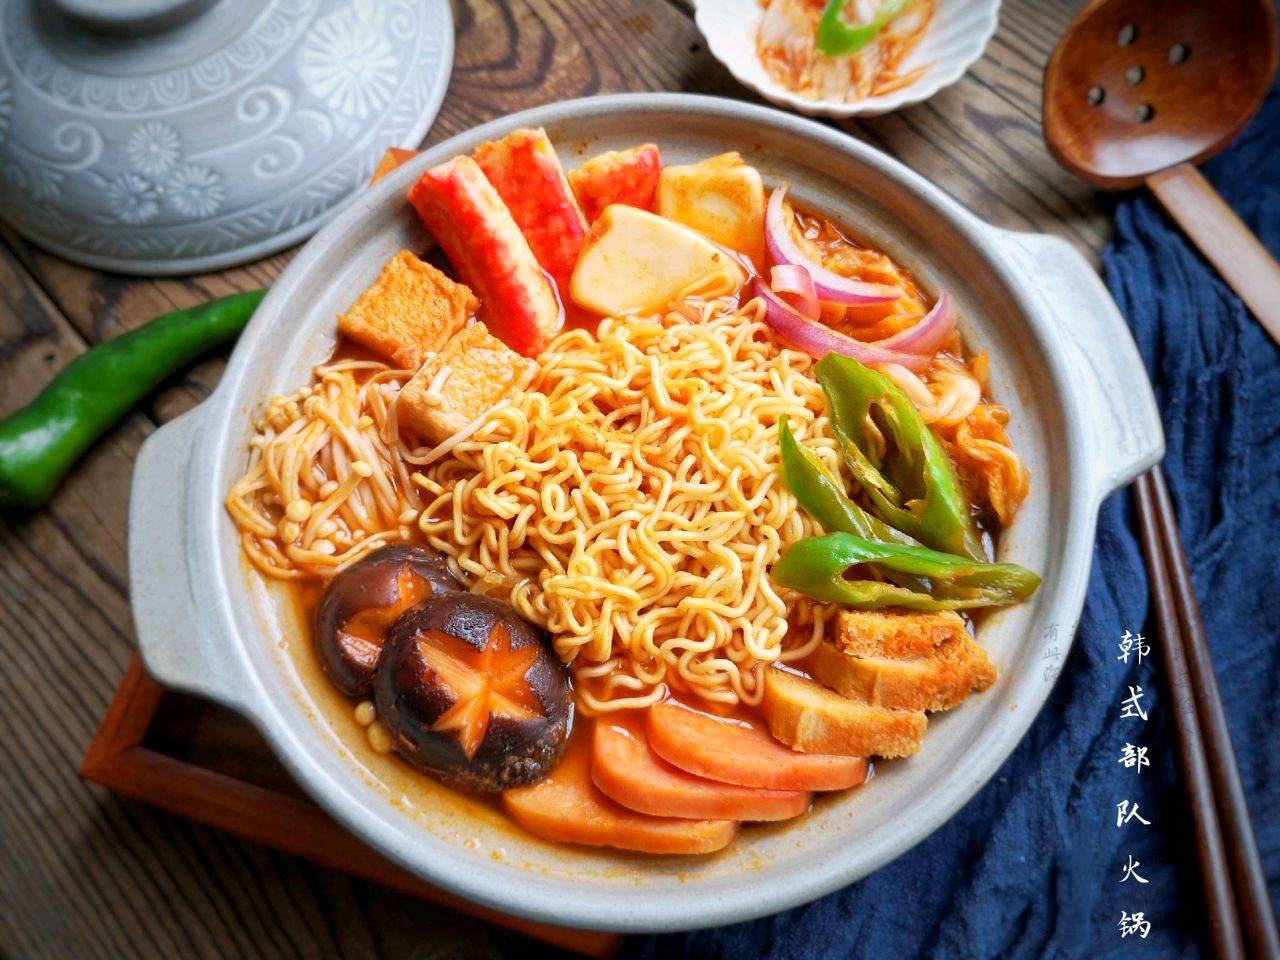 原创在家做韩式部队火锅简单方便丰盛美味是招待朋友的必备菜